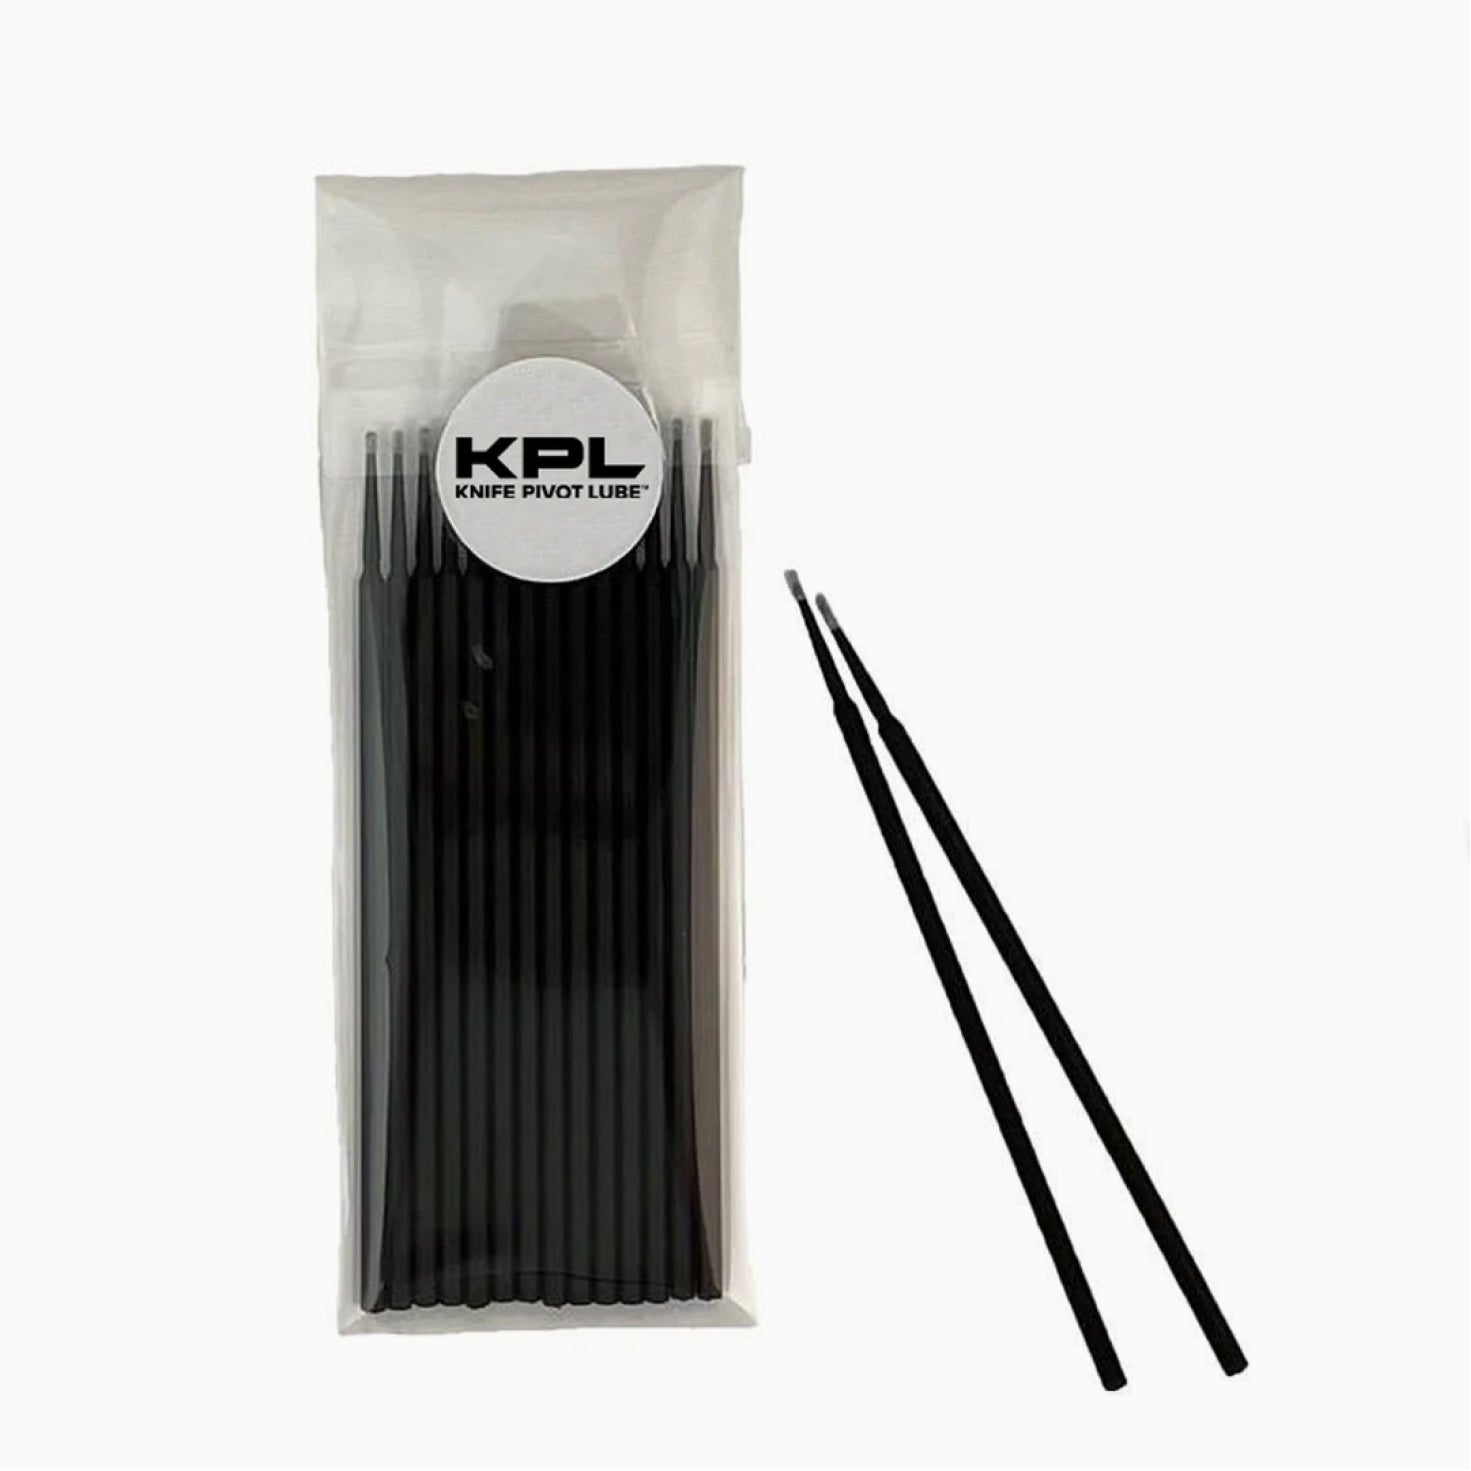 KPL™ Original Knife Oil – Knife Pivot Lube